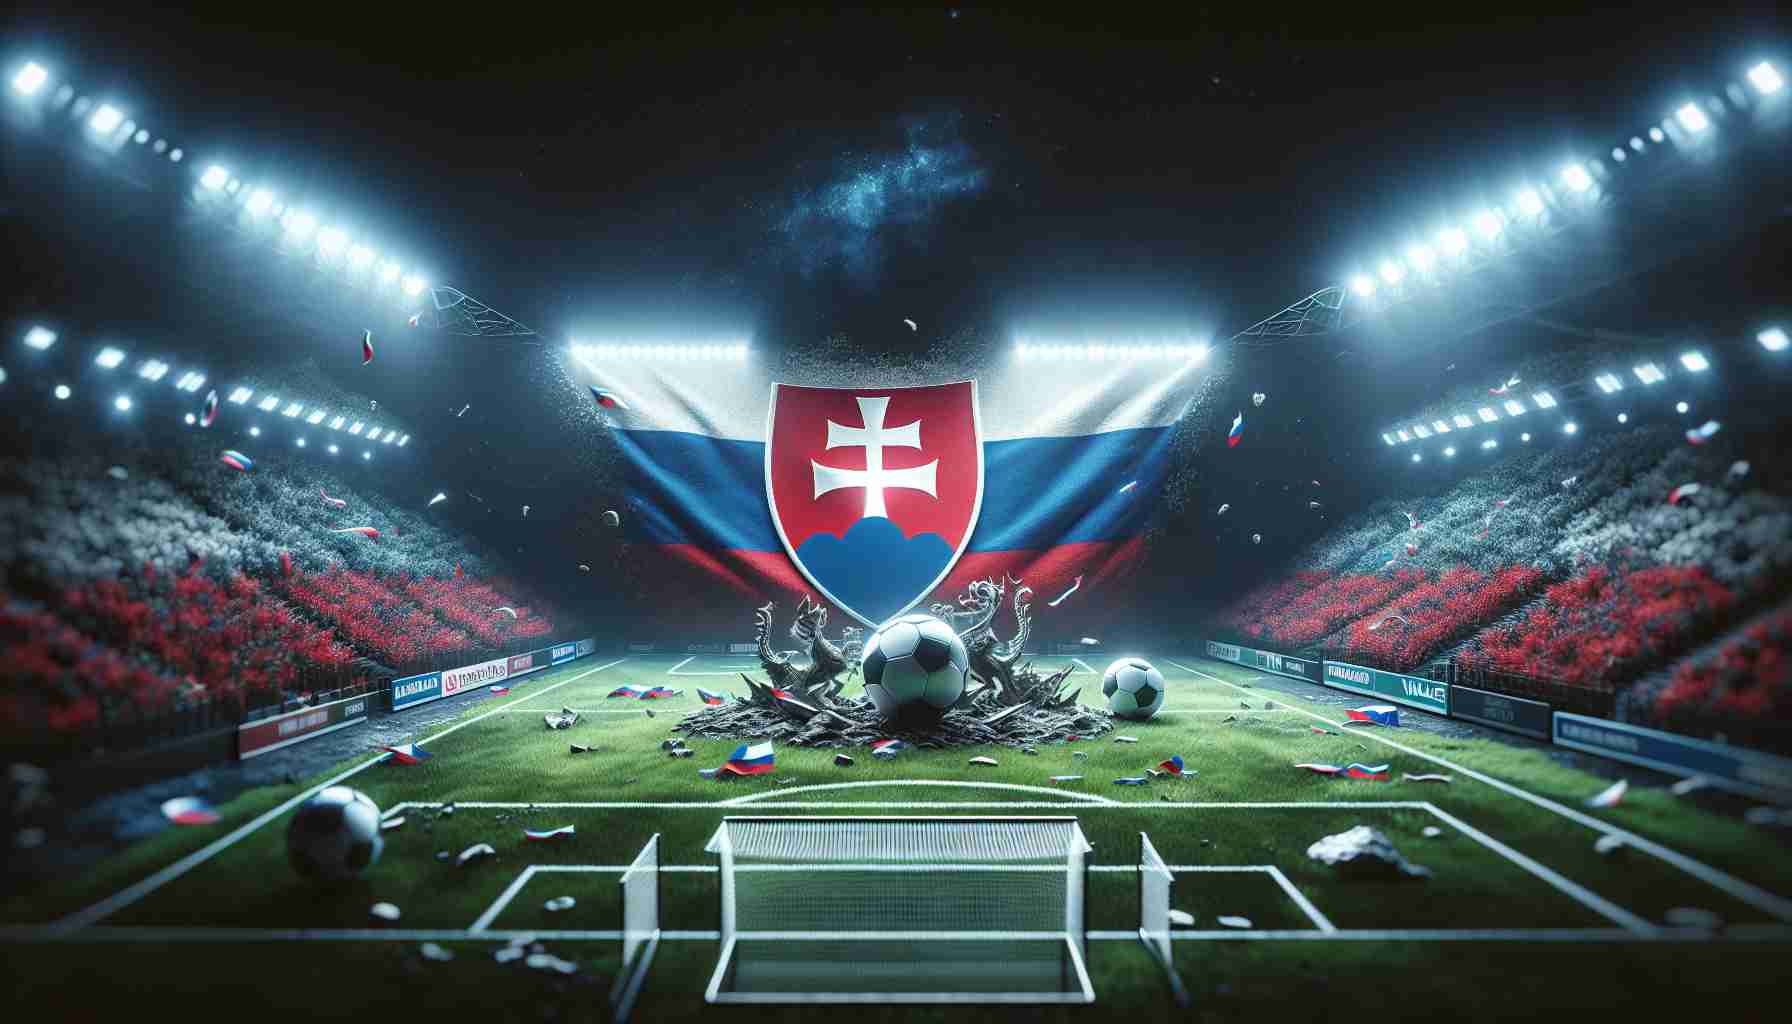 Slovensko sa v nadchádzajúcom prípravnom zápase proti Walesu zameria na dobrý výkon